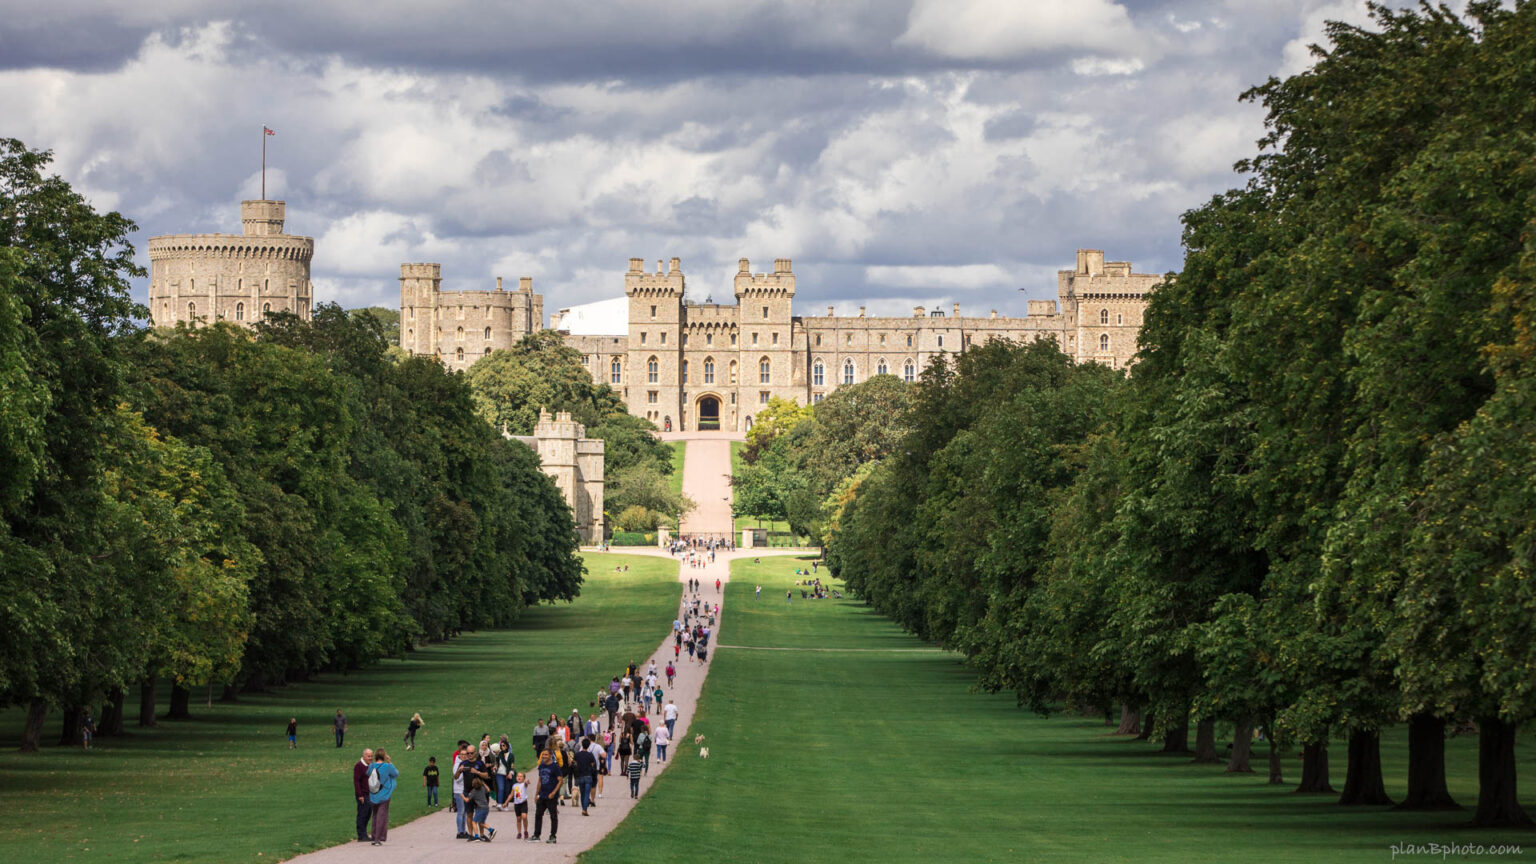 Windsor Castle photo spots : best places to photograph the castle